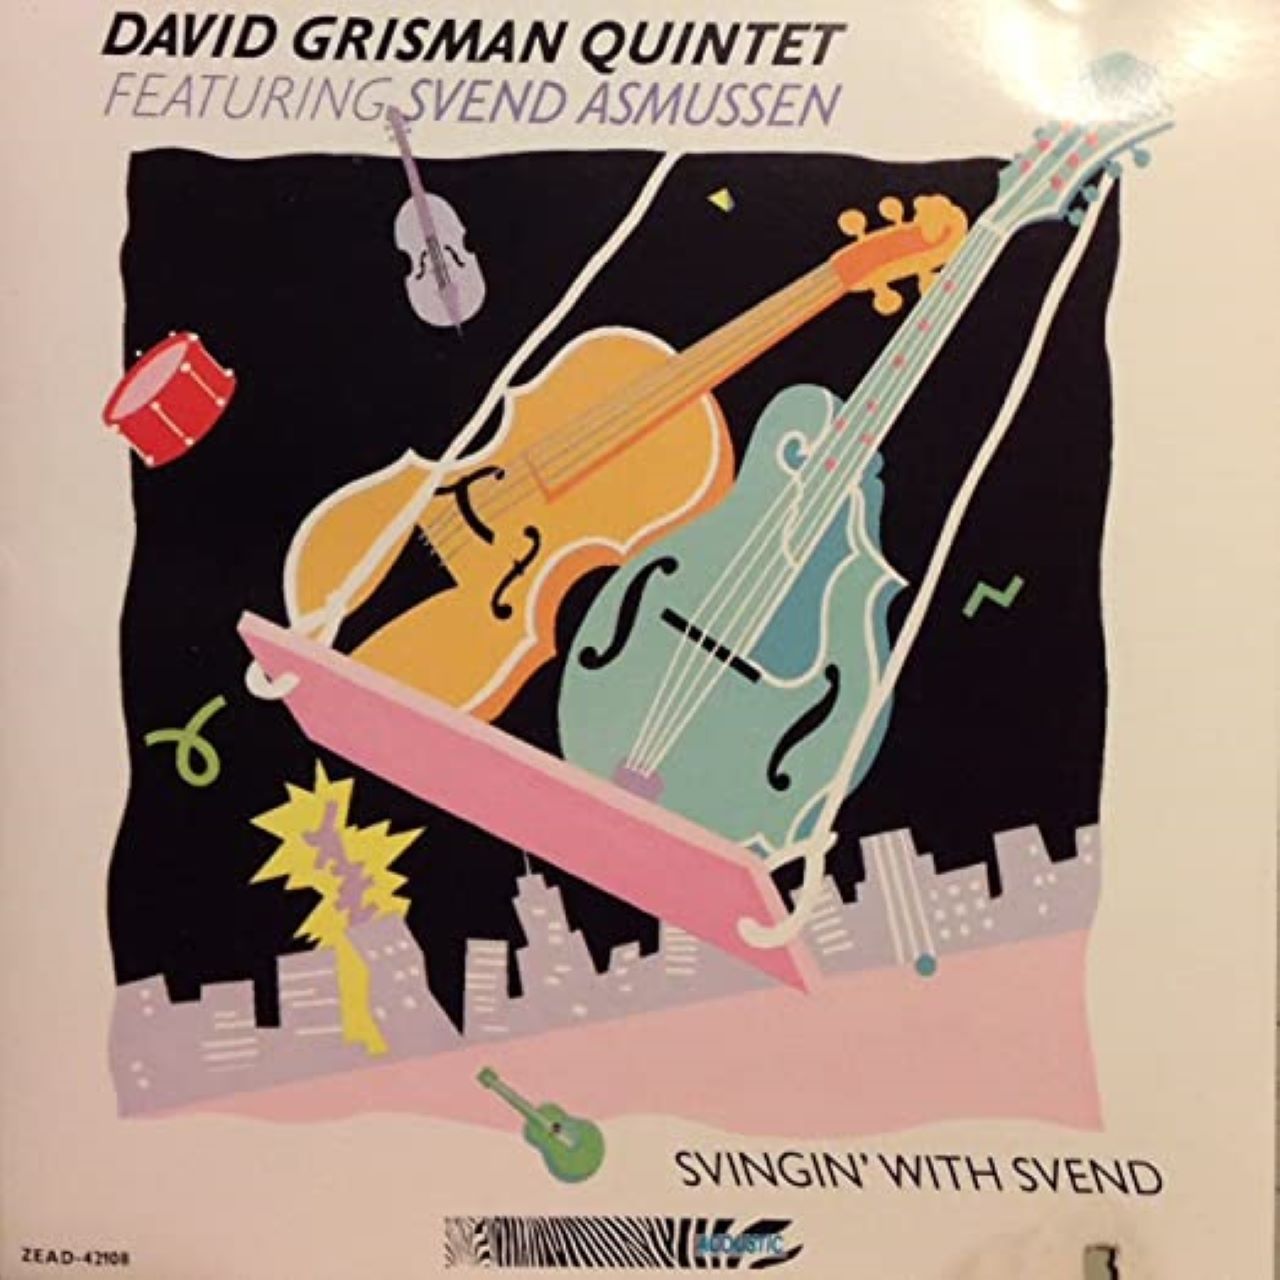 David Grisman Quintet – Svingin’ With Svend cover album